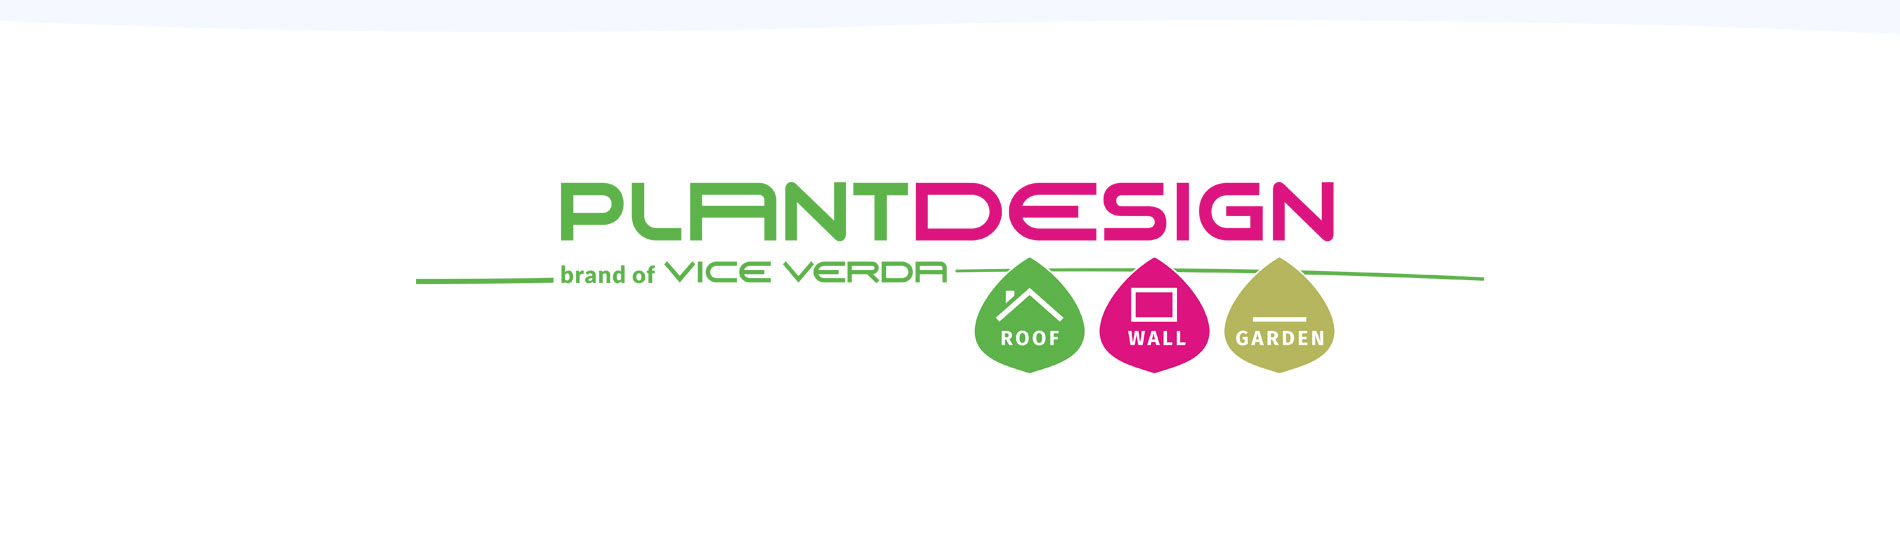 Vice Verda acquiert Plant Design